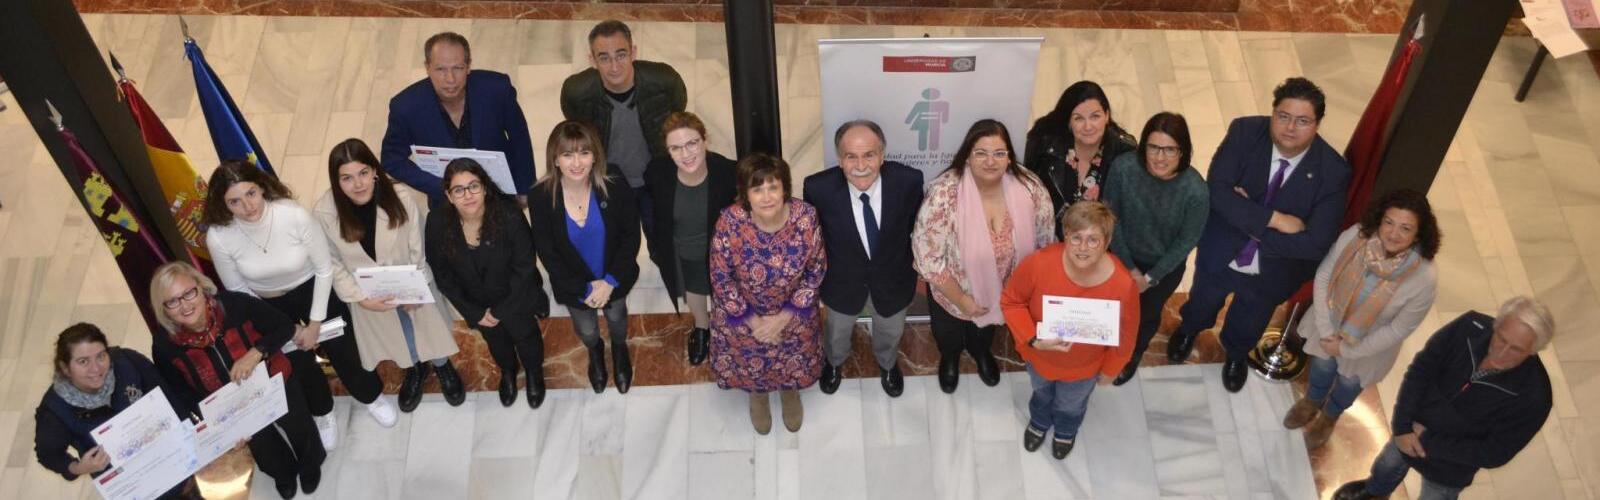 La Universidad de Murcia conmemora el Día Internacional para la Eliminación de la Violencia contra las Mujeres